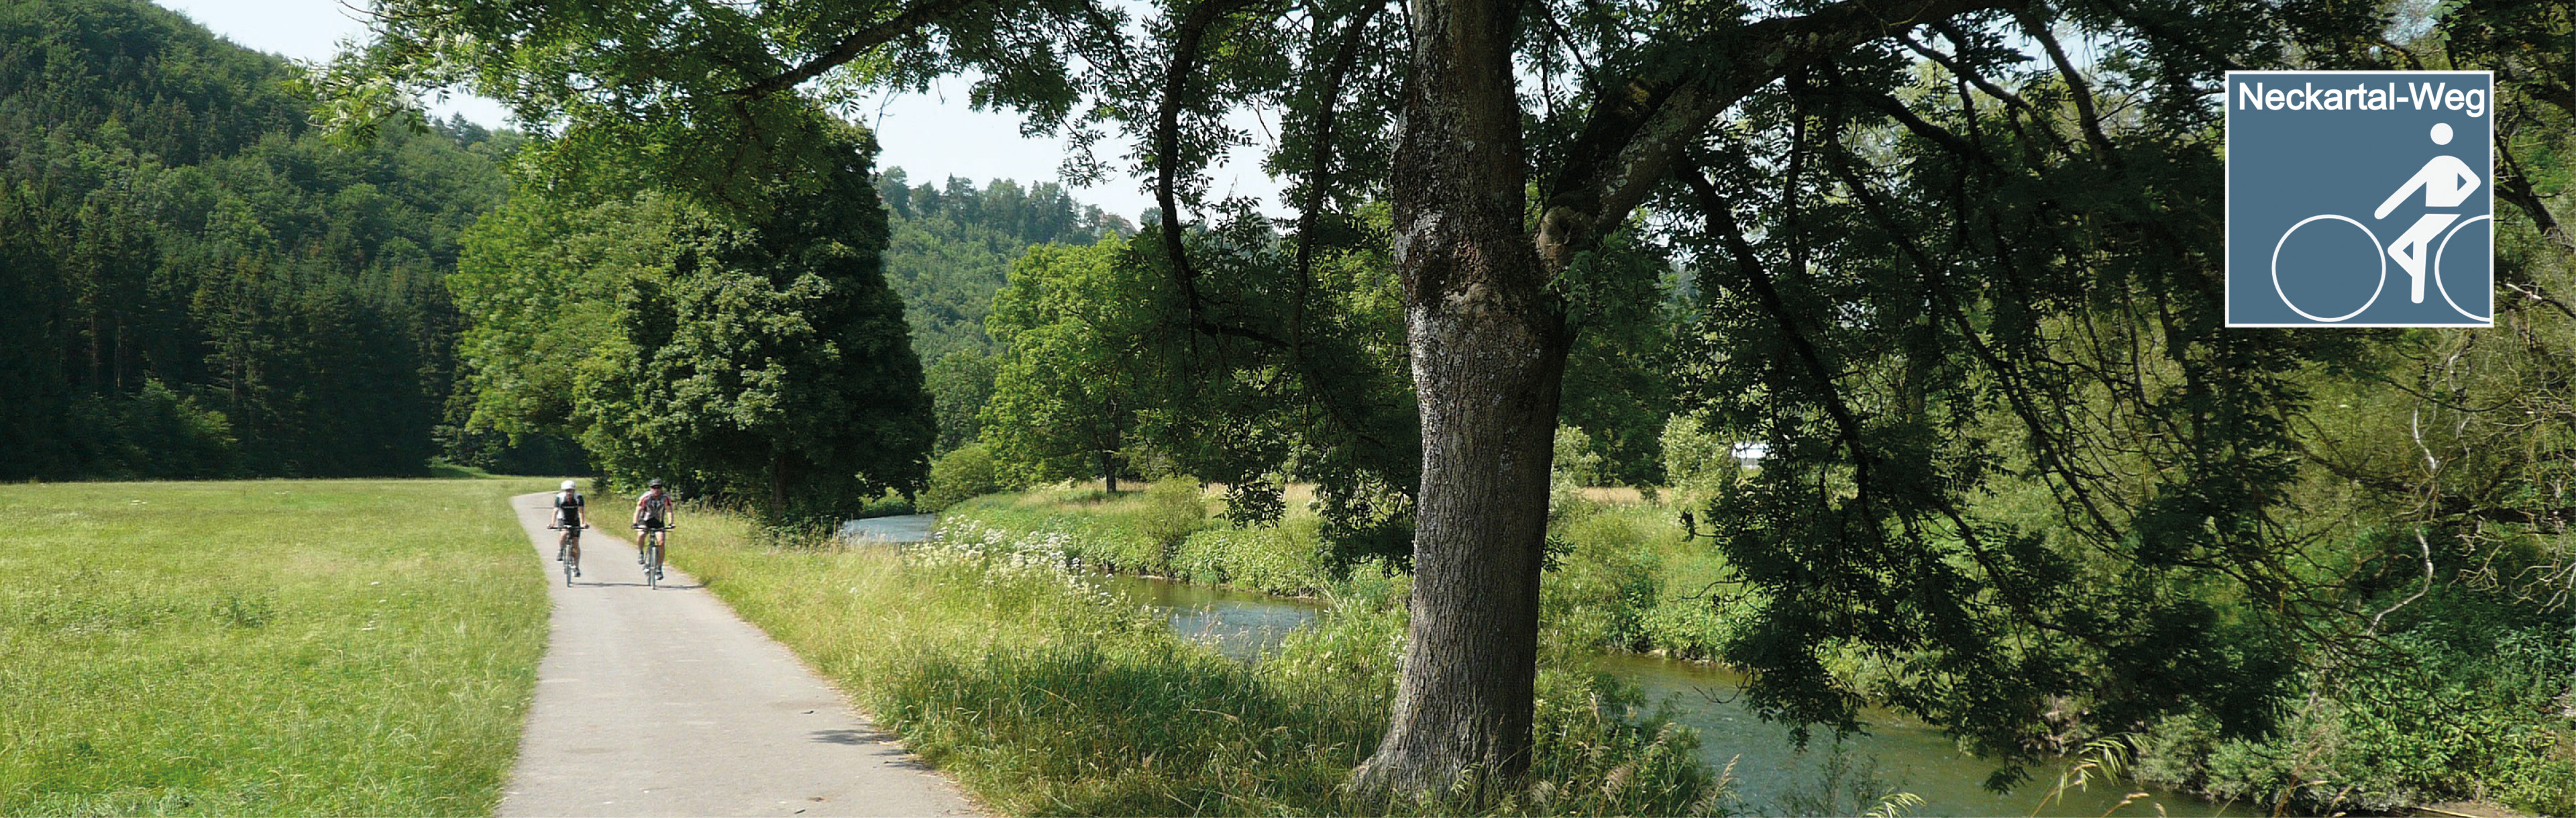 Zwei Radfahrer fahren entlang dem Fluss auf dem Neckartalradweg 